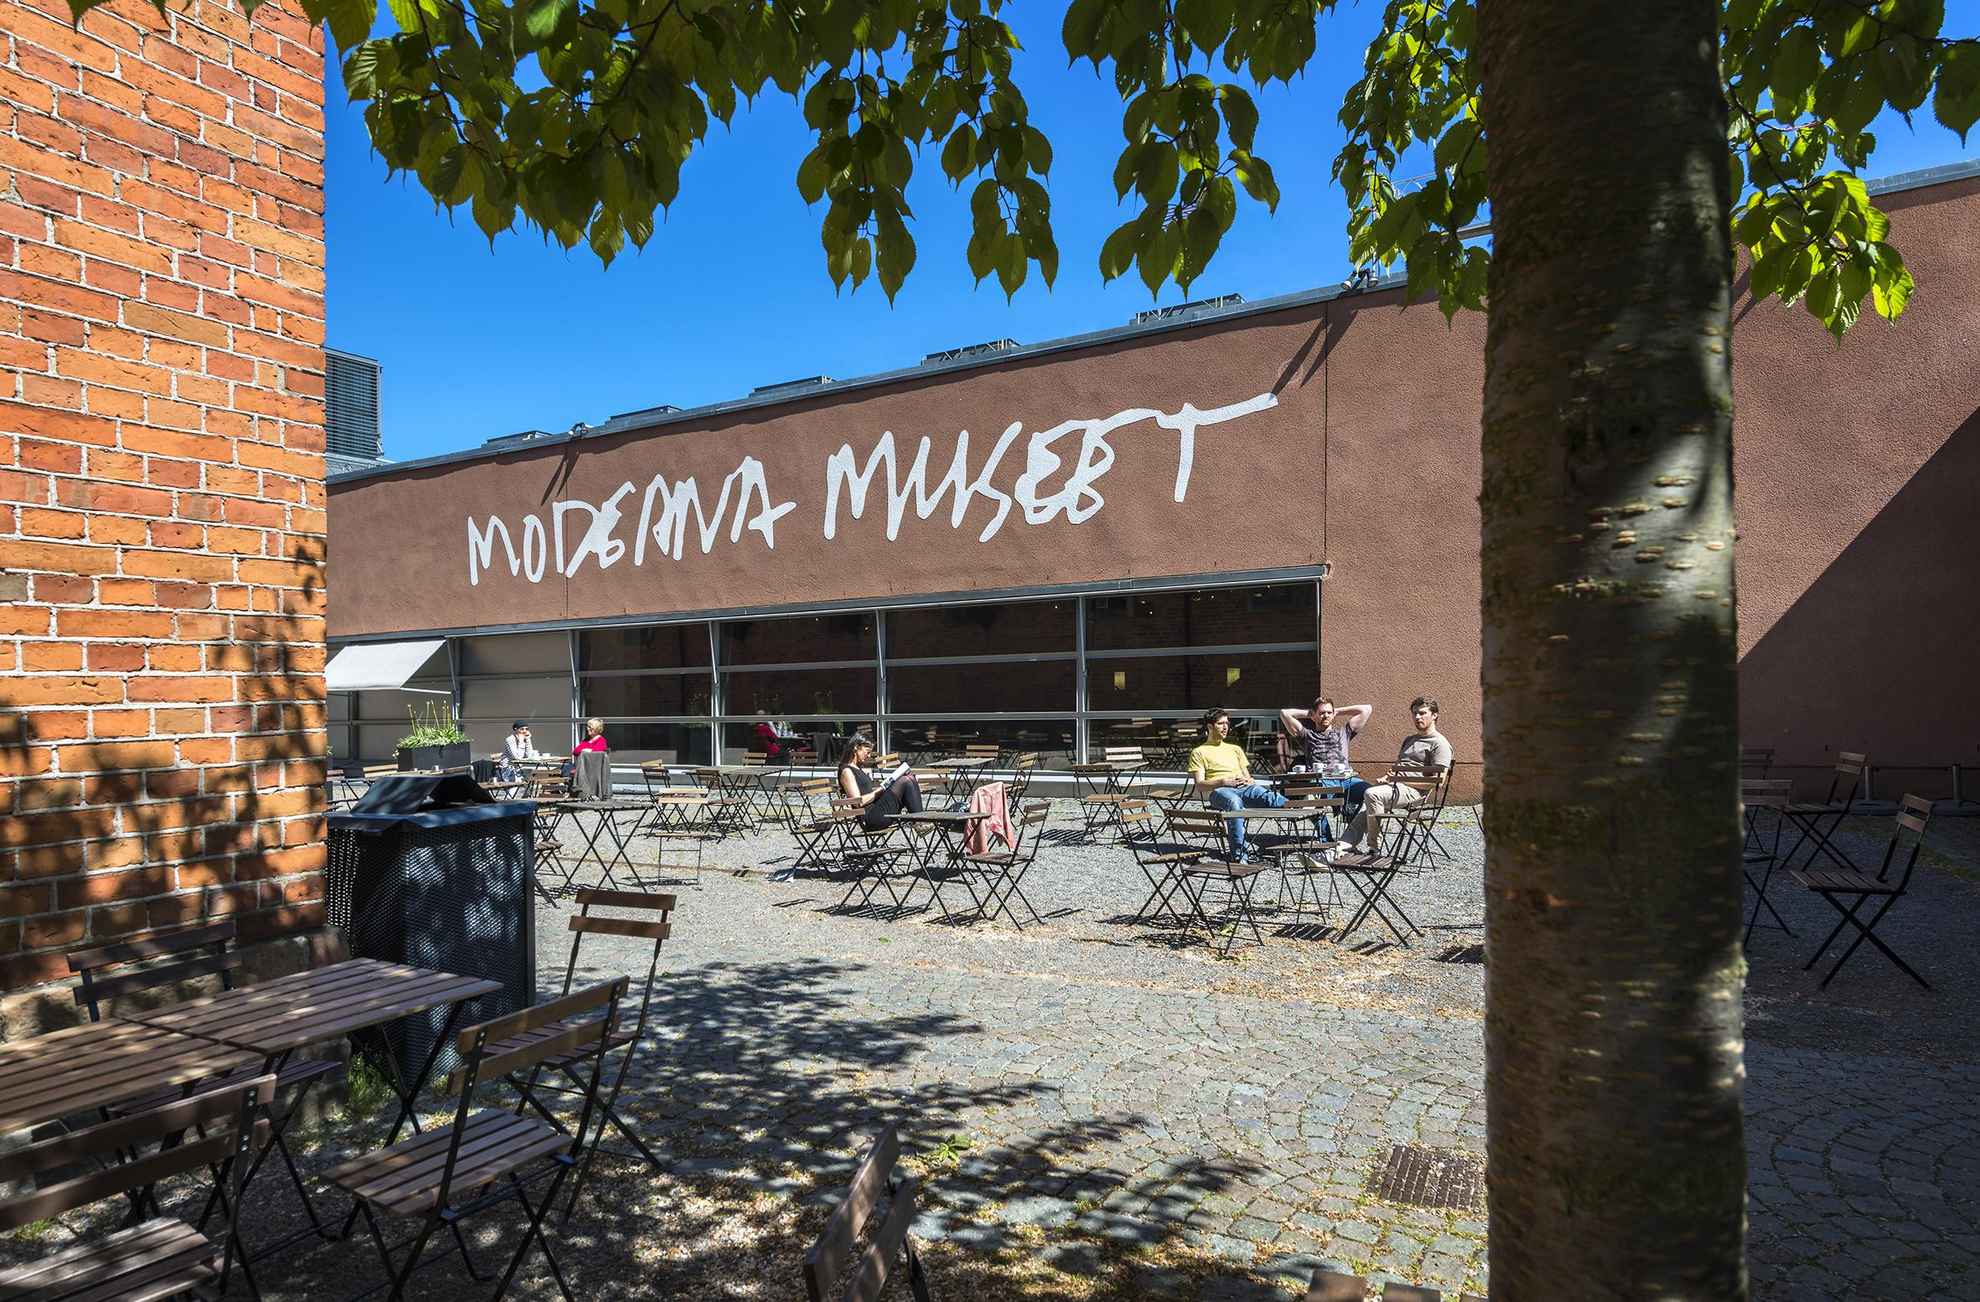 Außenansicht des Moderna Museet in Stockholm.  Vor dem Museum stehen viele Gartenmöbel und Menschen sitzen in der Sonne.